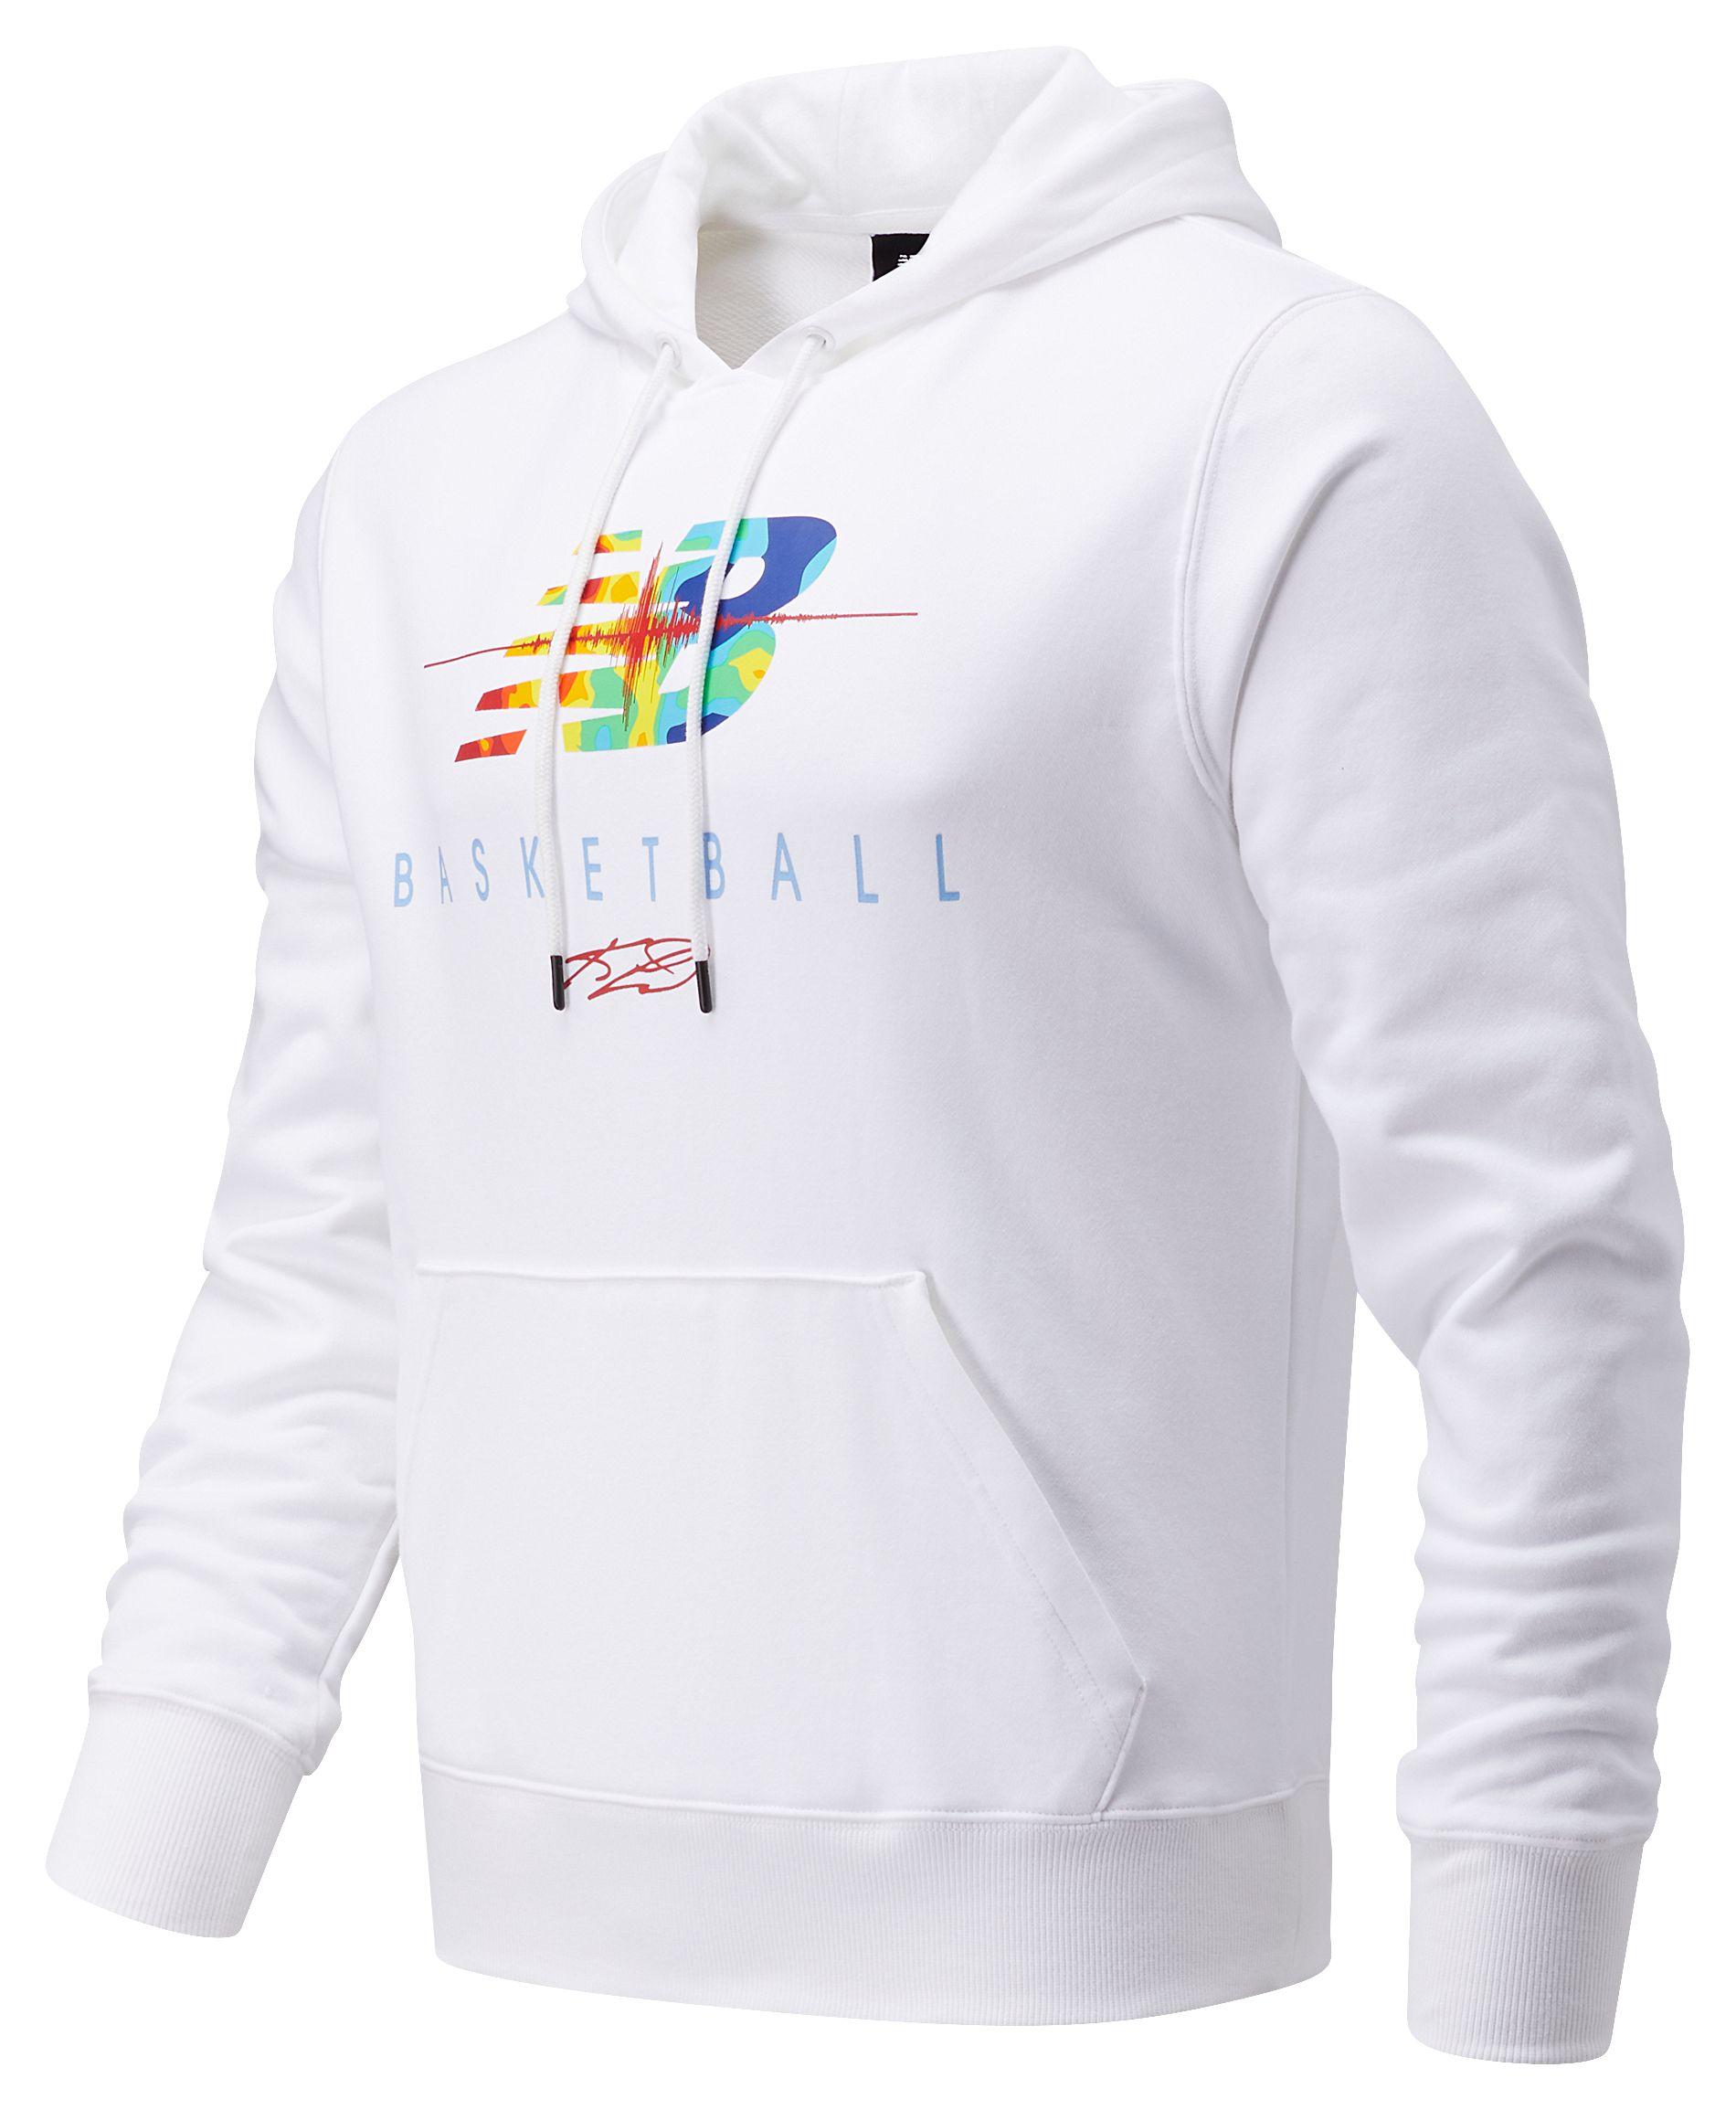 white new balance hoodie